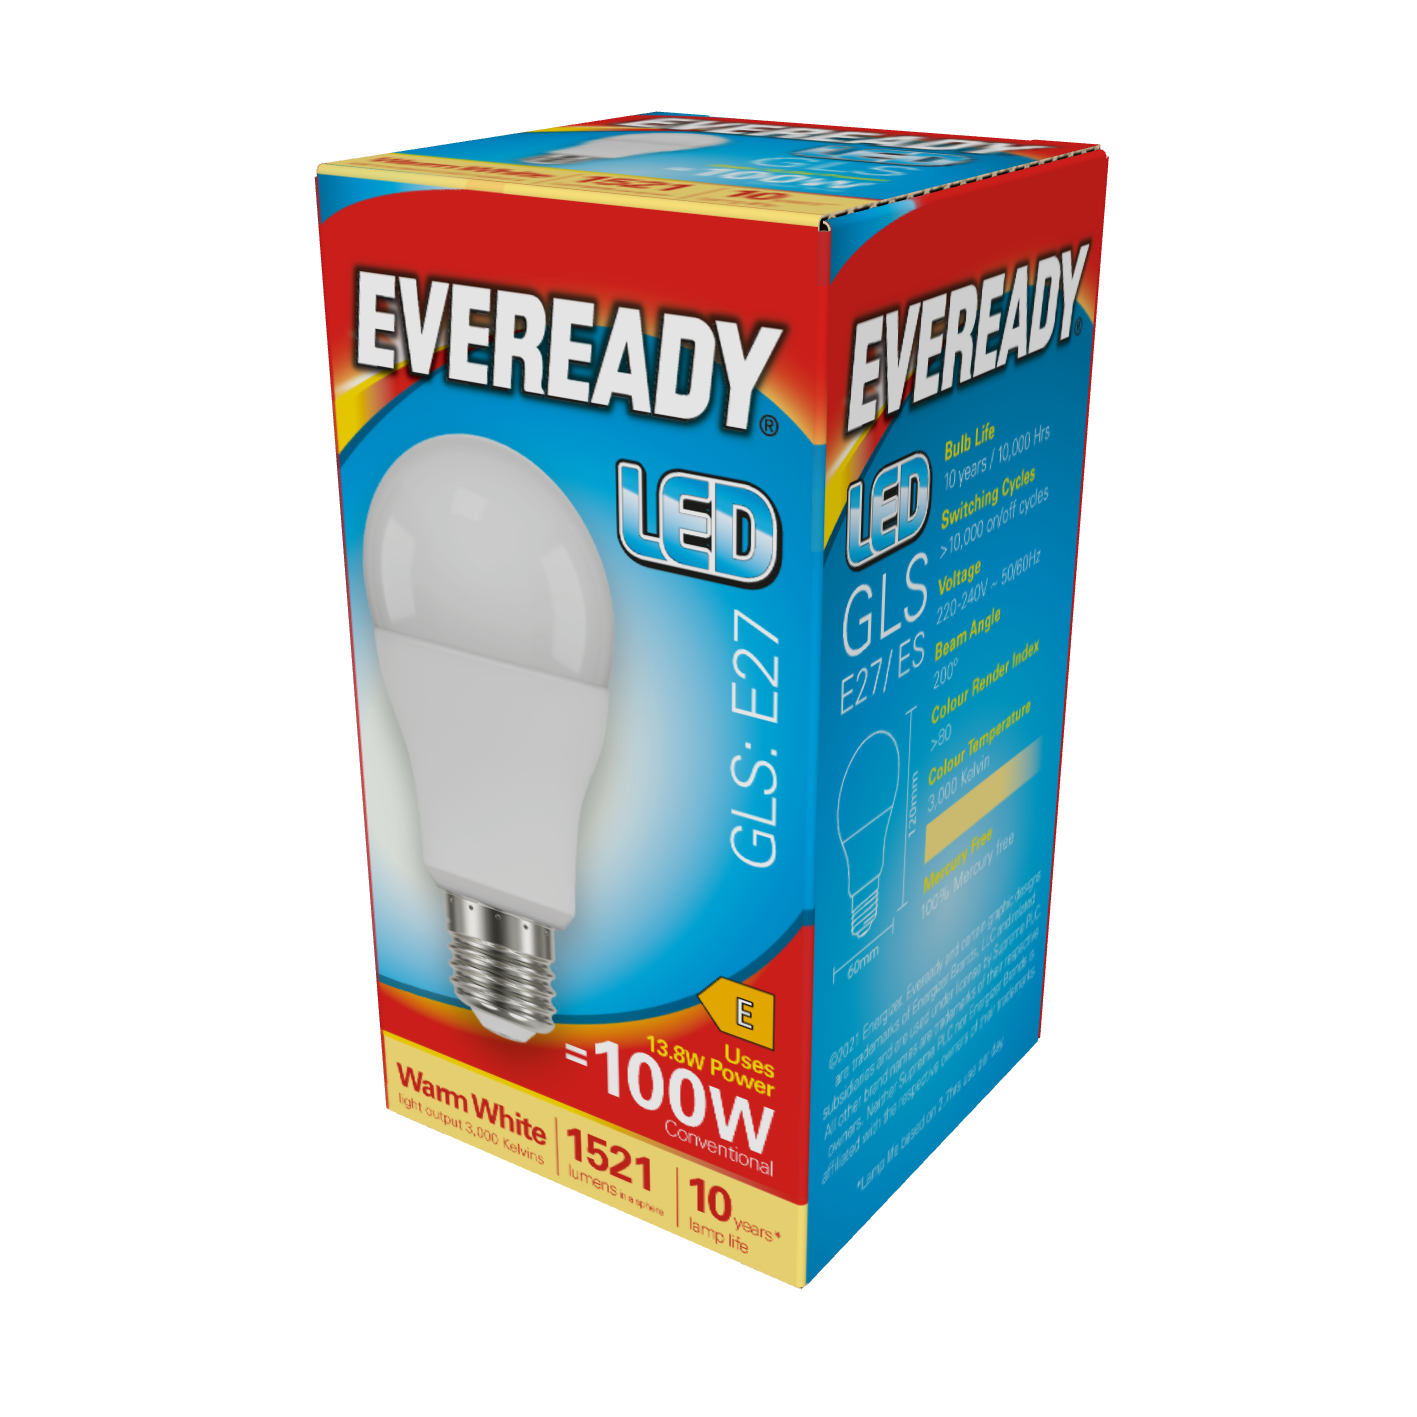 Eveready LED GLS E27 (ES) 1.521 lm 13,8 W 3.000 K (Warmweiß), Packung mit 1 Stück